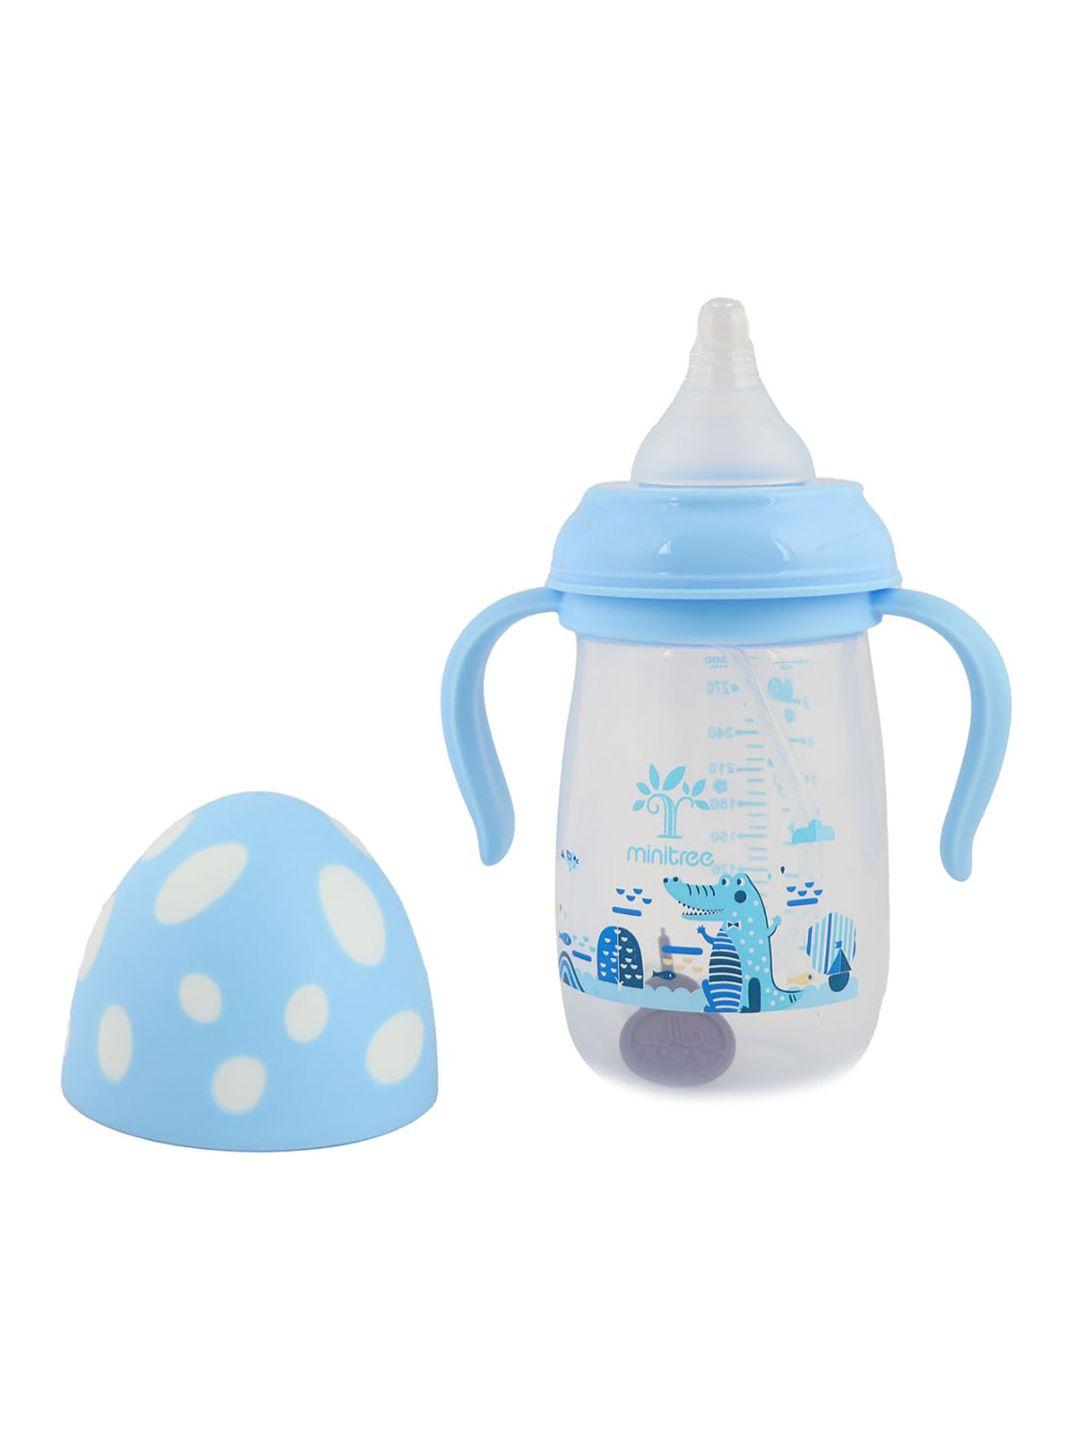 guchigu blue baby bpa free feeding bottles with handle 300ml - 9011a